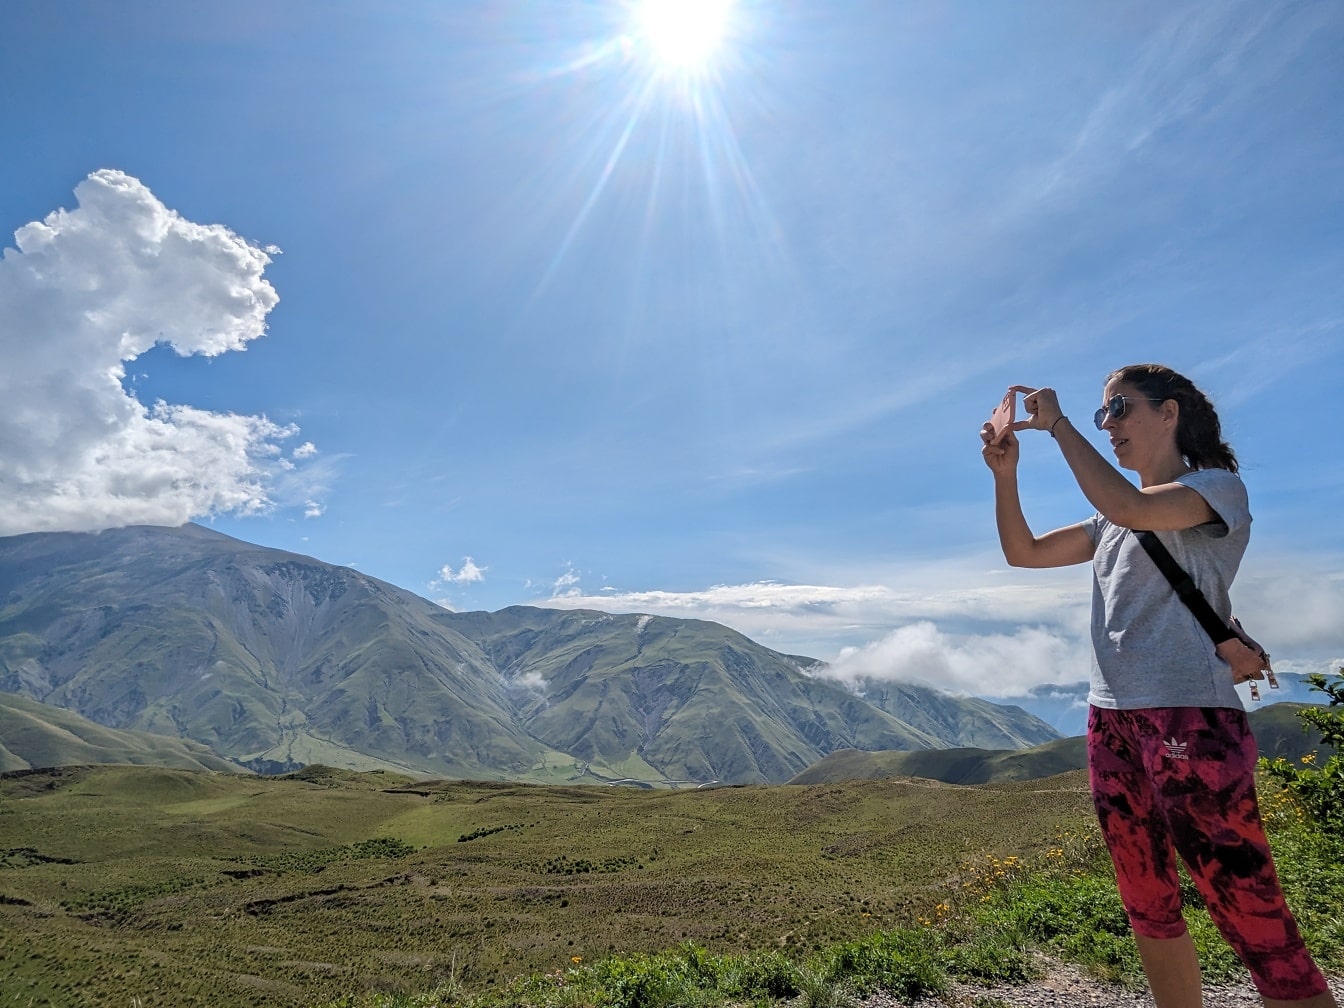 Nainen ottamassa kuvaa vuoresta kännykällään